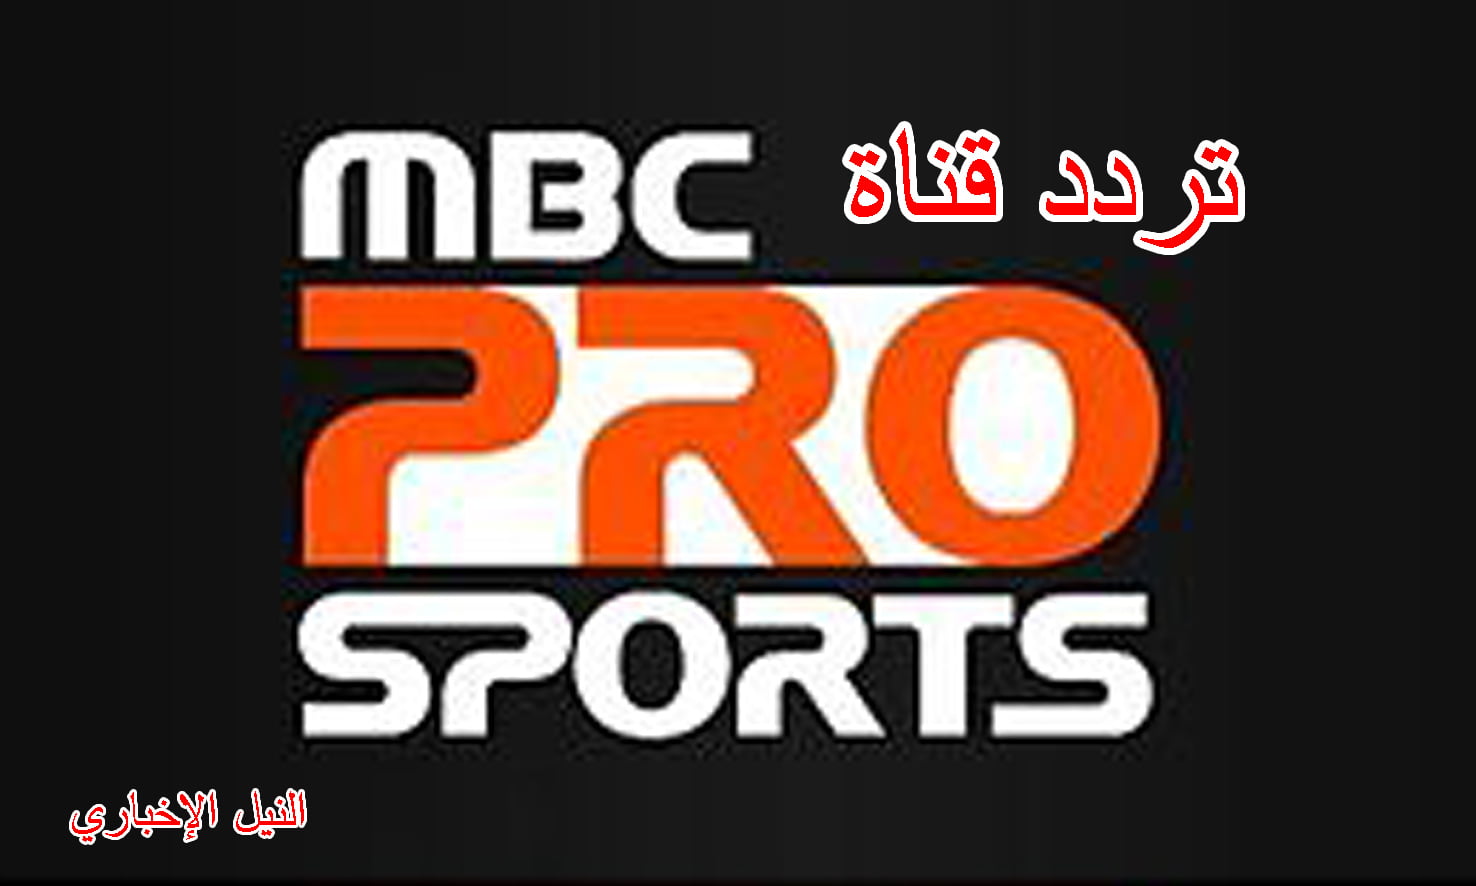 تردد قناة إم بي سي برو PRO SPORTS الرياضية عبر نايل سات وعرب سات